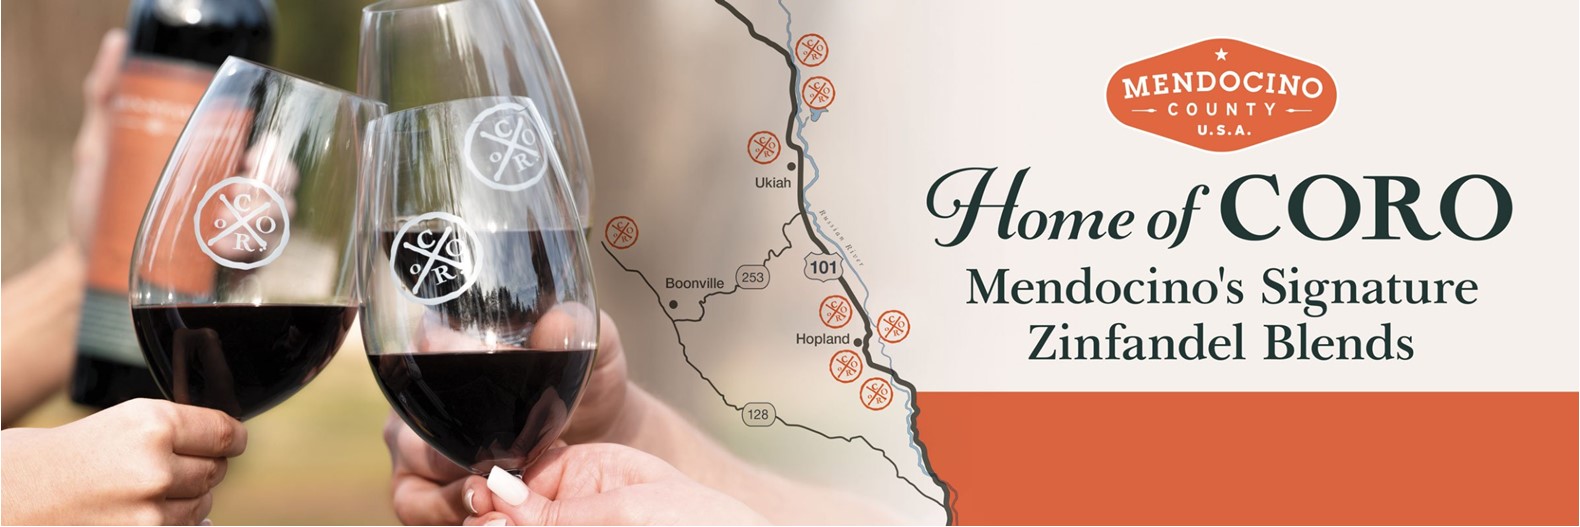 Projektet Coro Mendocino startede op i 2001 som en drøm og blev hurtigt til et unikt samarbejde mellem otte vinproducenter i Mendocino, for at skabe en vin, som afspejler den rige arv og unikke egenskaber man finder i Mendocino County. Coro kommer fra Latin, der betyder ”fra mange til en”.